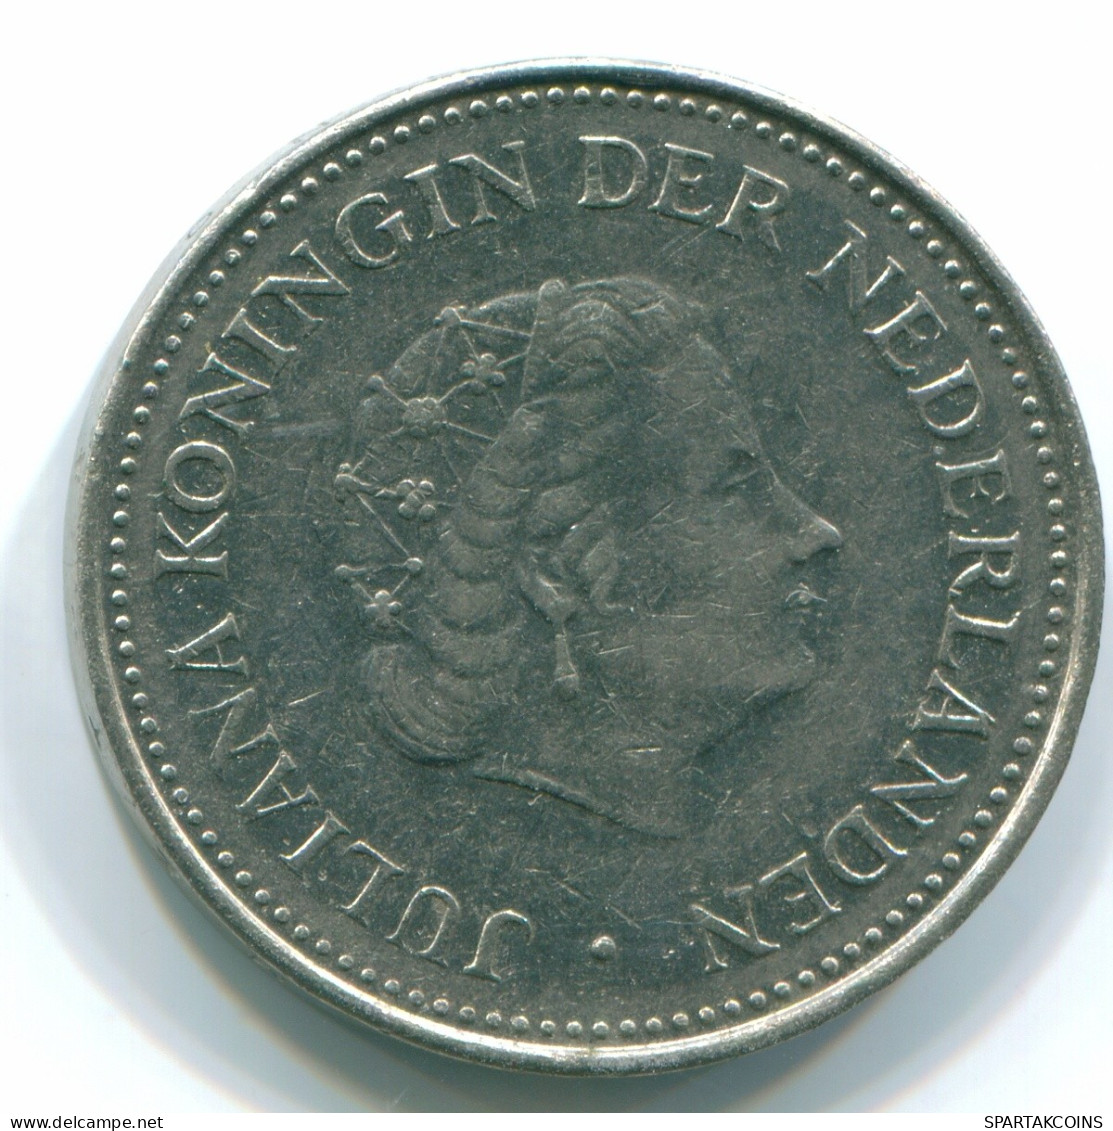 1 GULDEN 1971 NETHERLANDS ANTILLES Nickel Colonial Coin #S11955.U.A - Niederländische Antillen